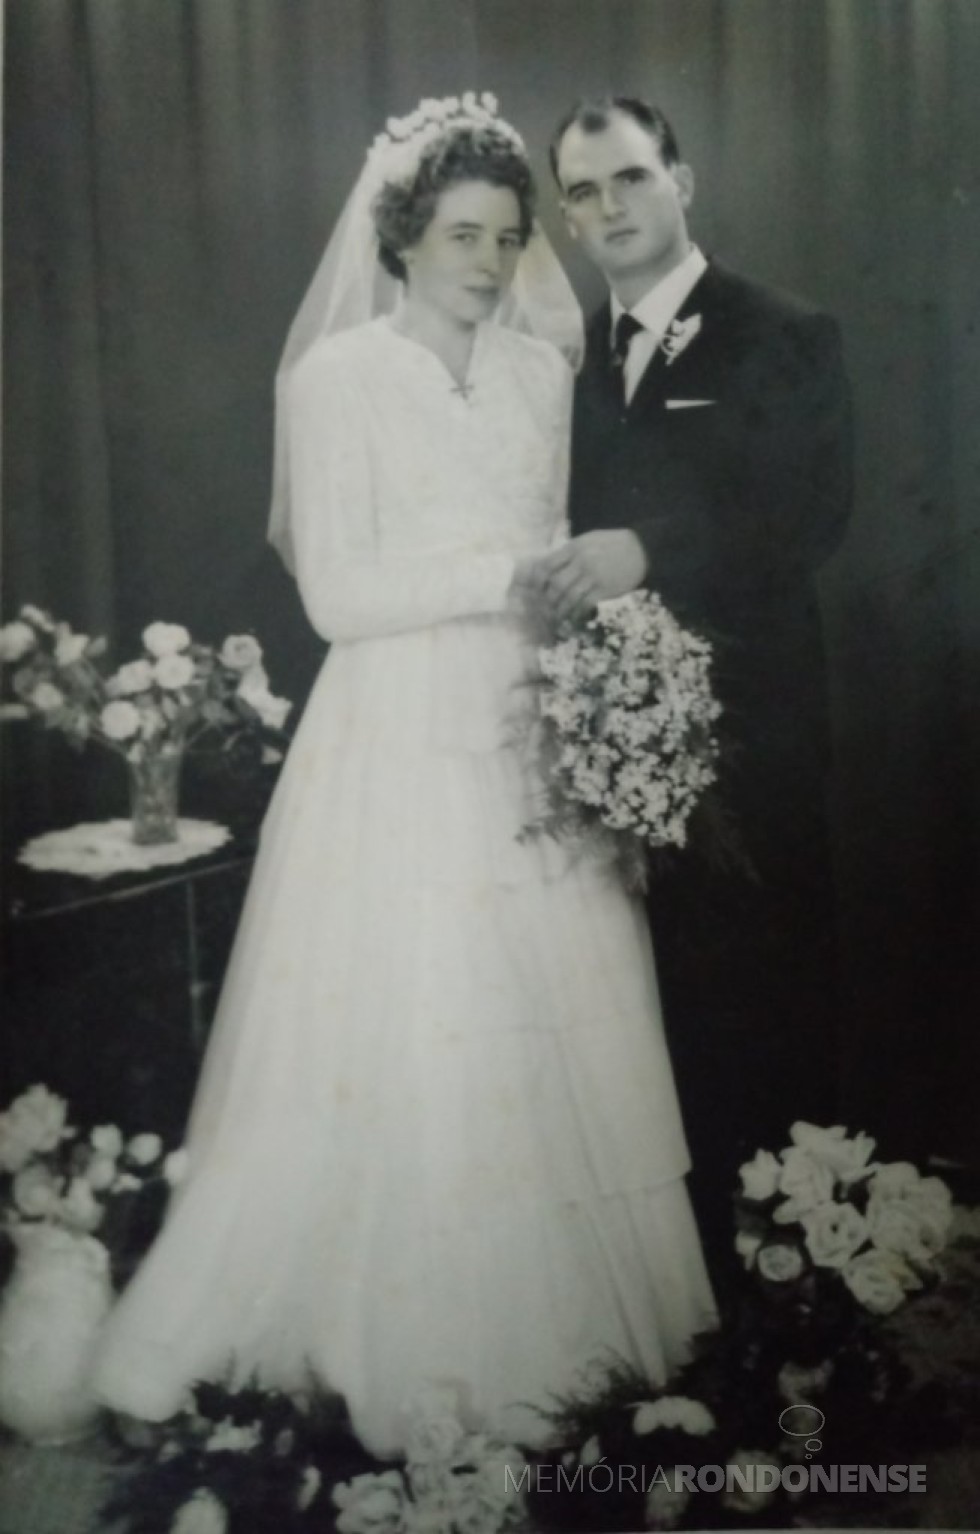 Noivos Clarice Vogt e João Natálio Stein, pioneiros rondonenses que se casaram em Santa Cruz do Sul (RS), em julho de 1961.
Imagem: Acervo da família - FOTO 1 - 